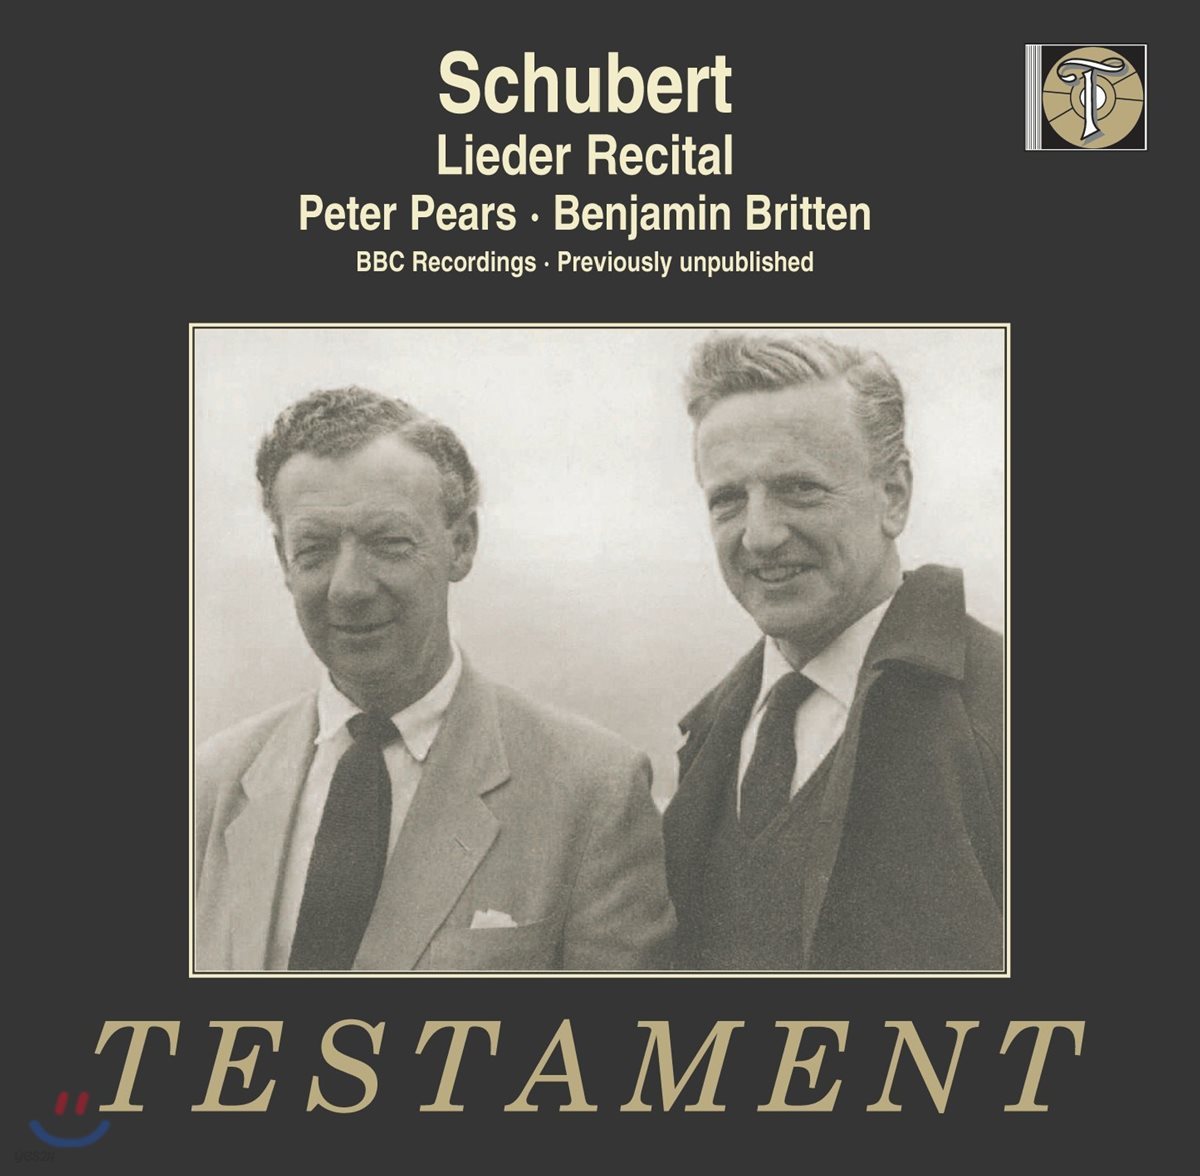 Peter Pears / Benjamin Britten 슈베르트 가곡 리사이틀 (Schubert: Lieder Recital)